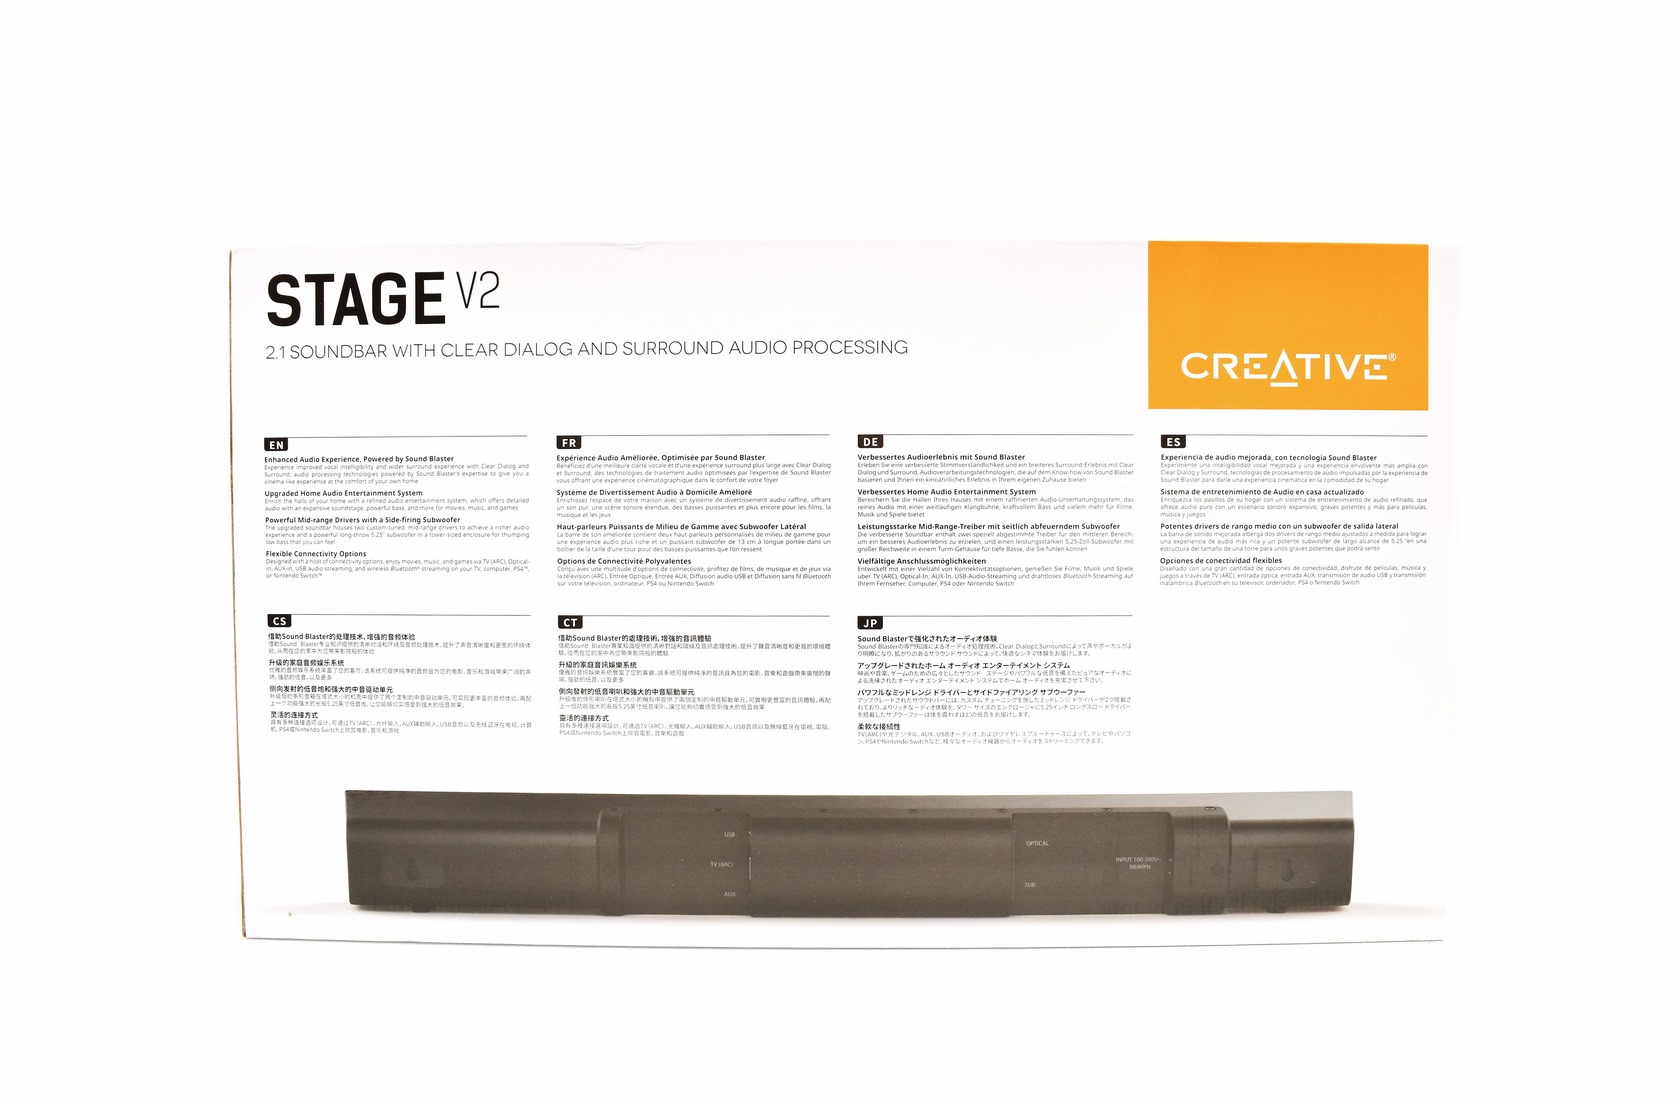 Creative Stage V2 2.1 Soundbar Review